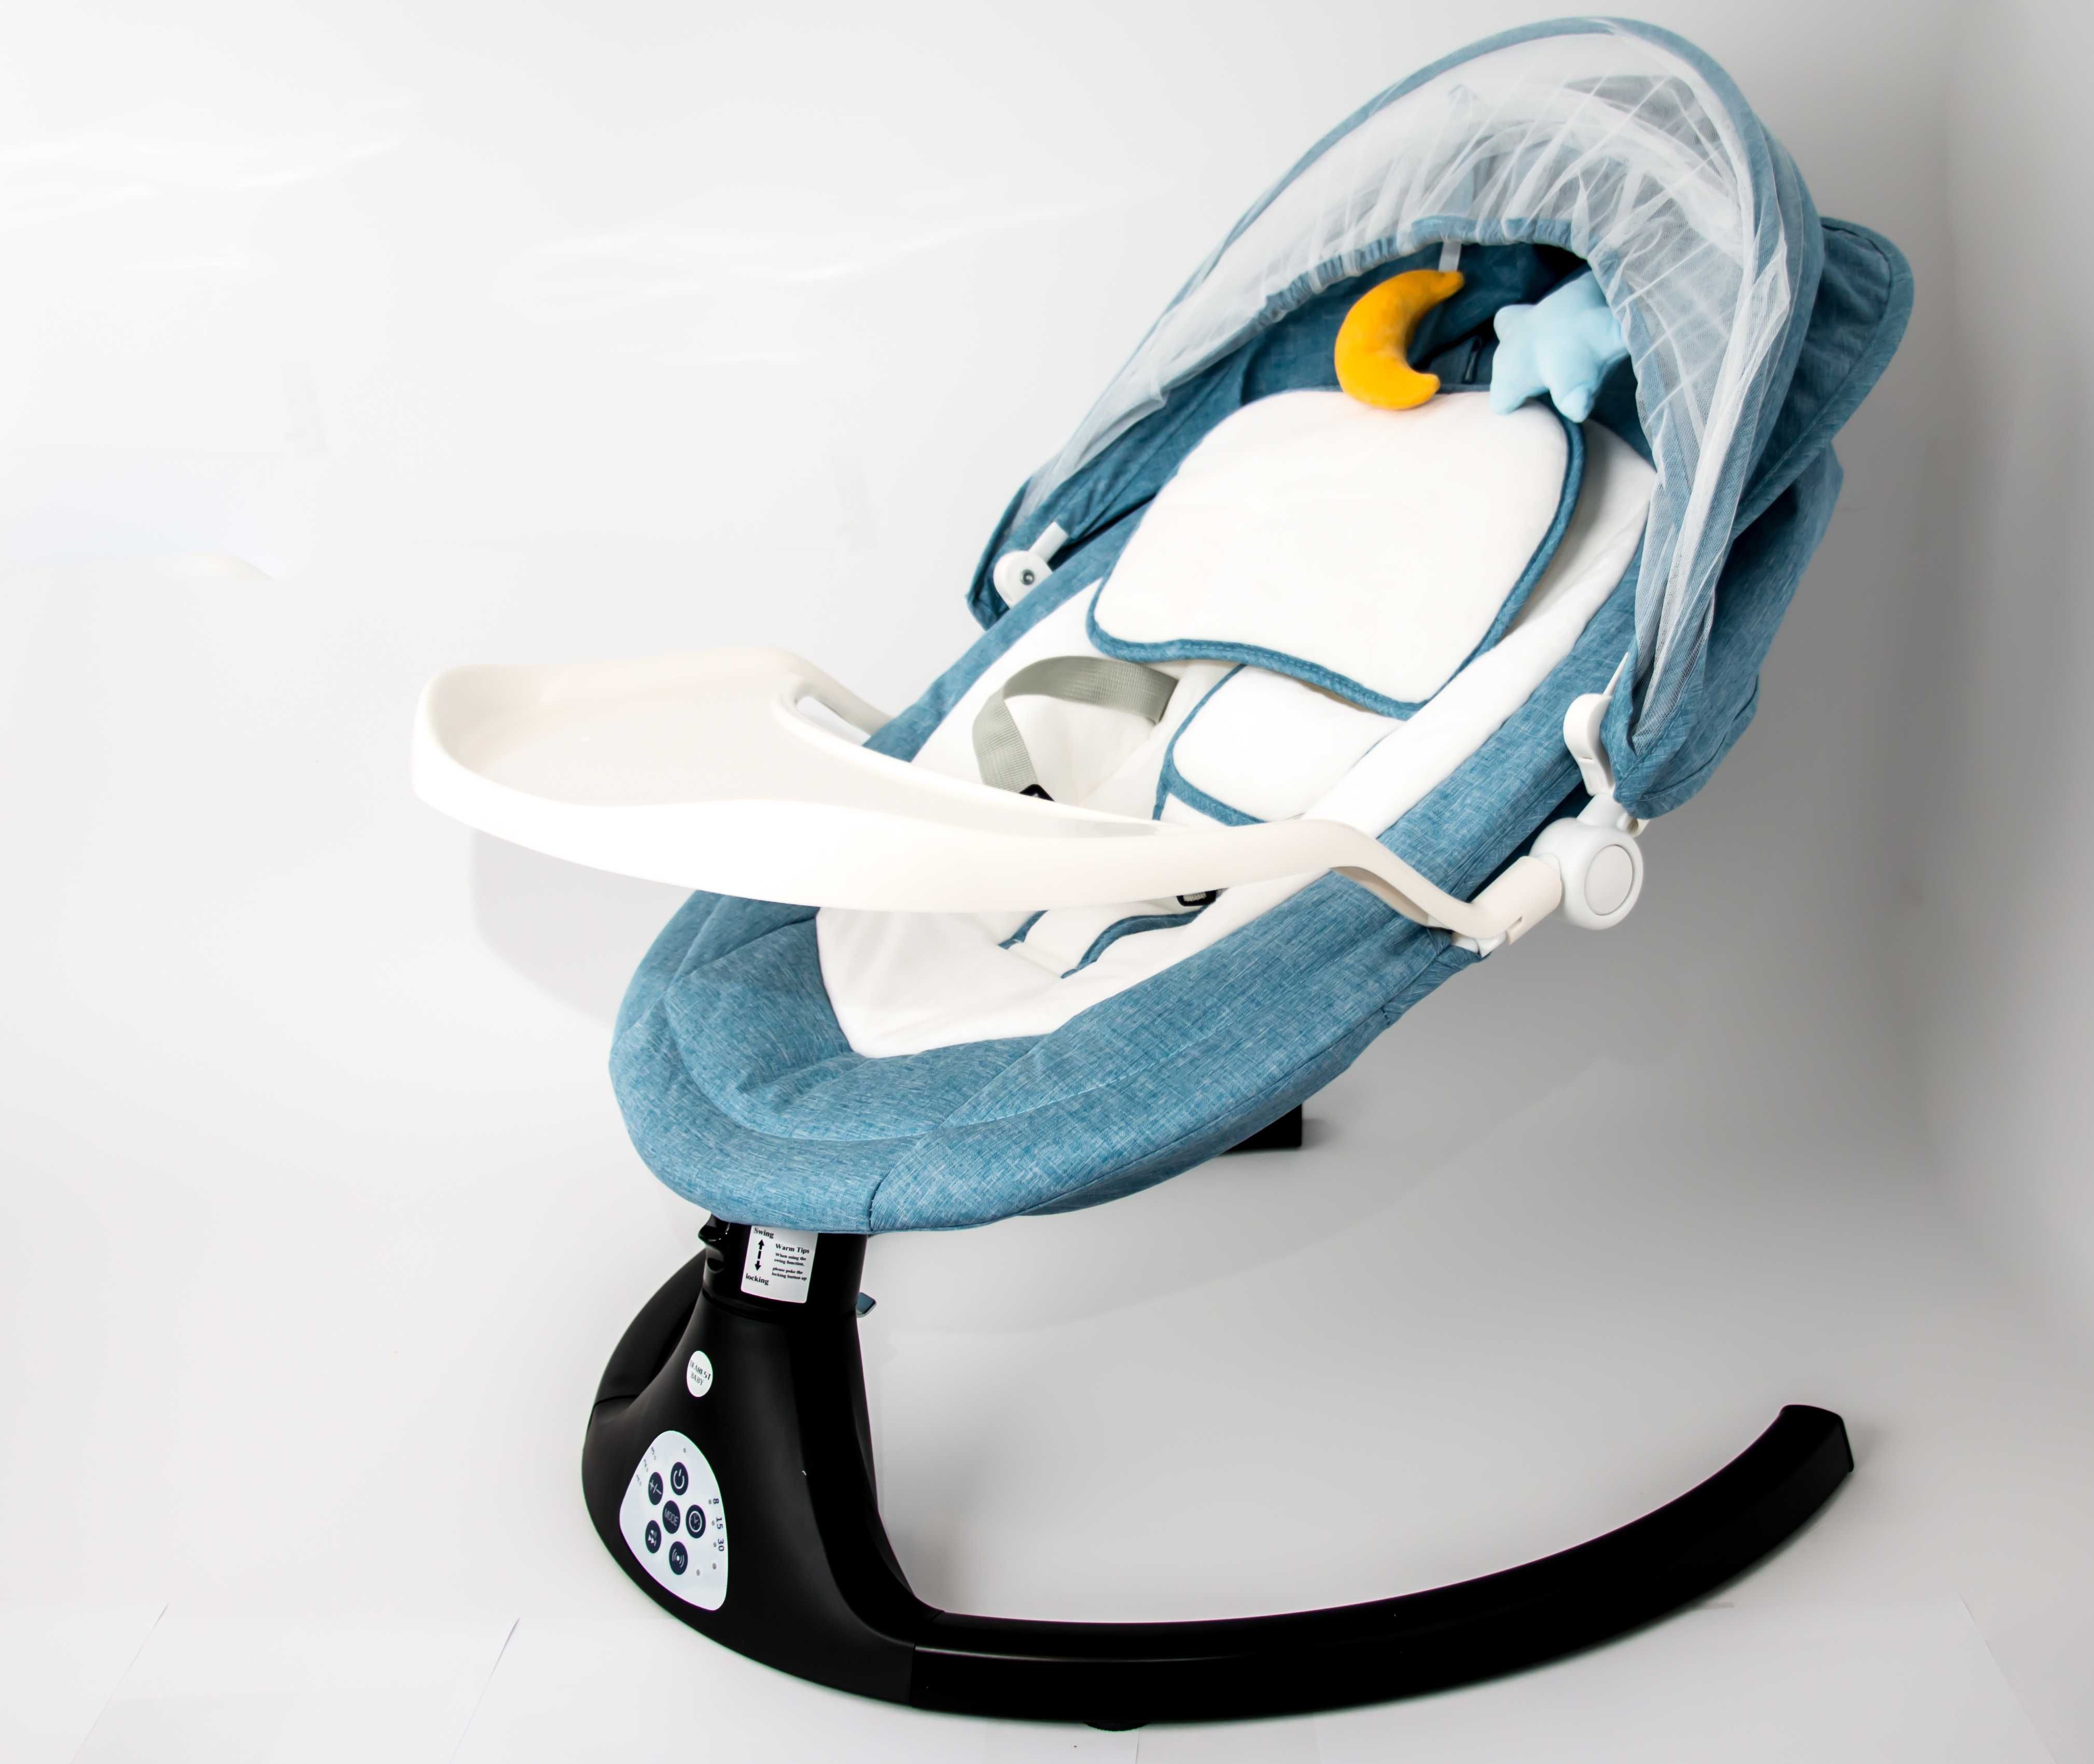 Balansoar electric pentru bebeluși confortabil pentru micuțul tău